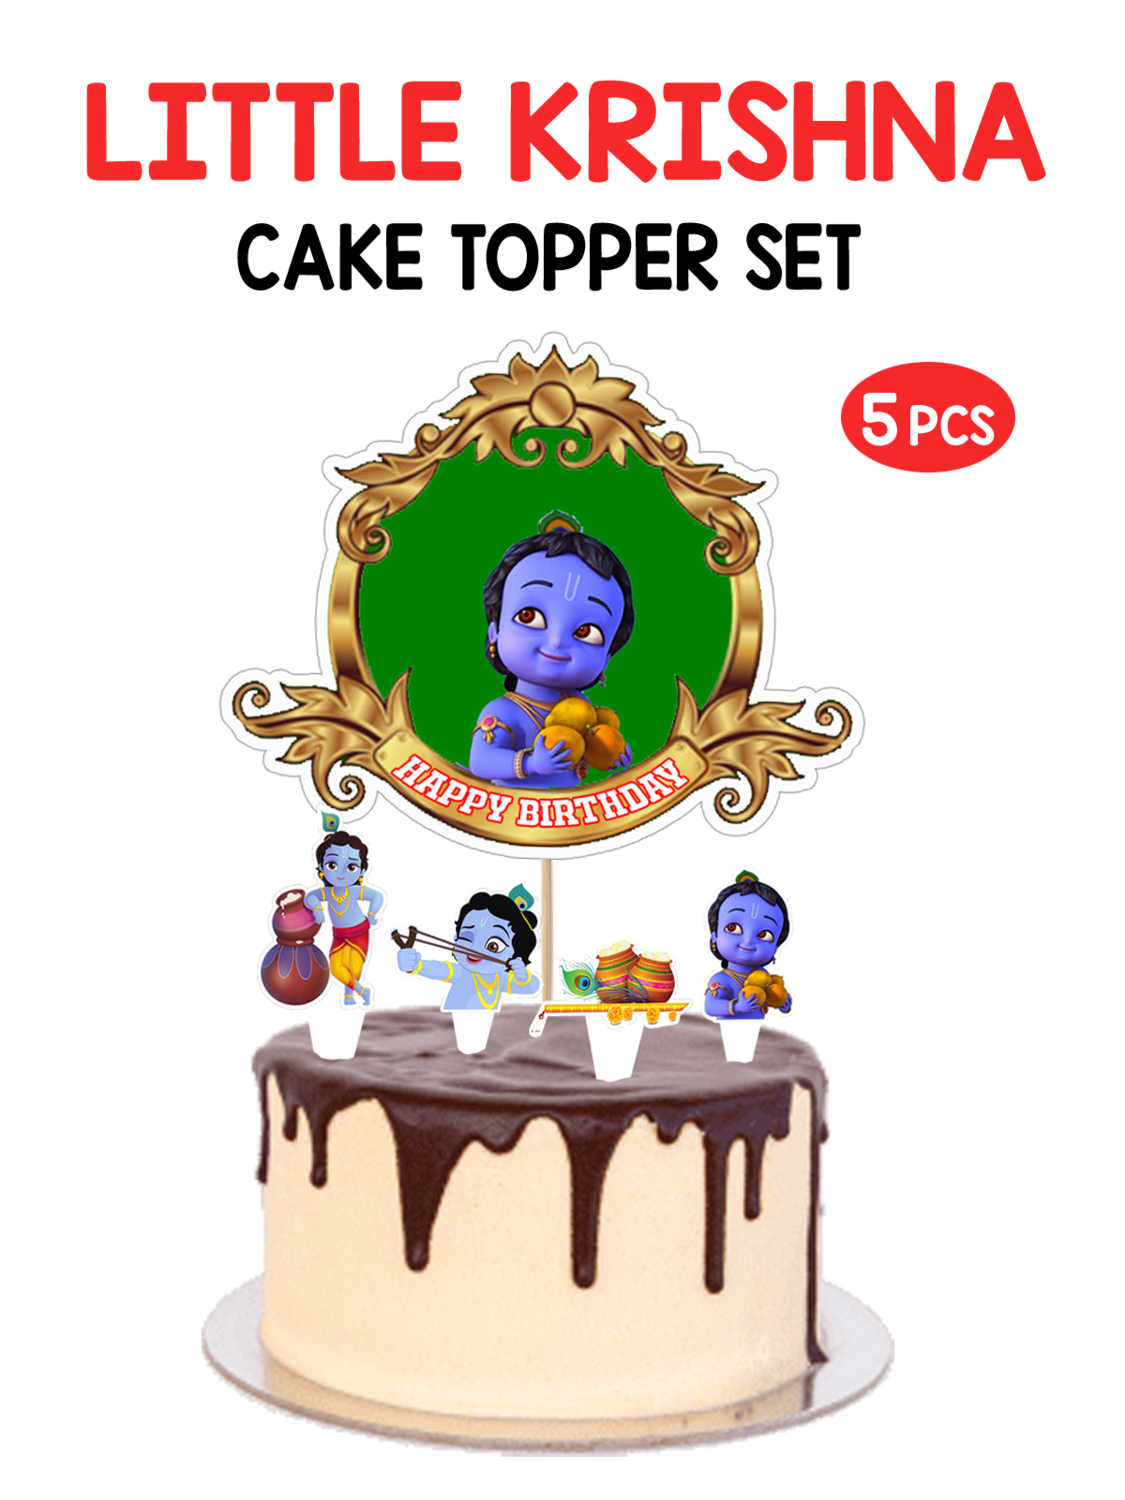 Little Krishna - Cake Topper 5pcs Set